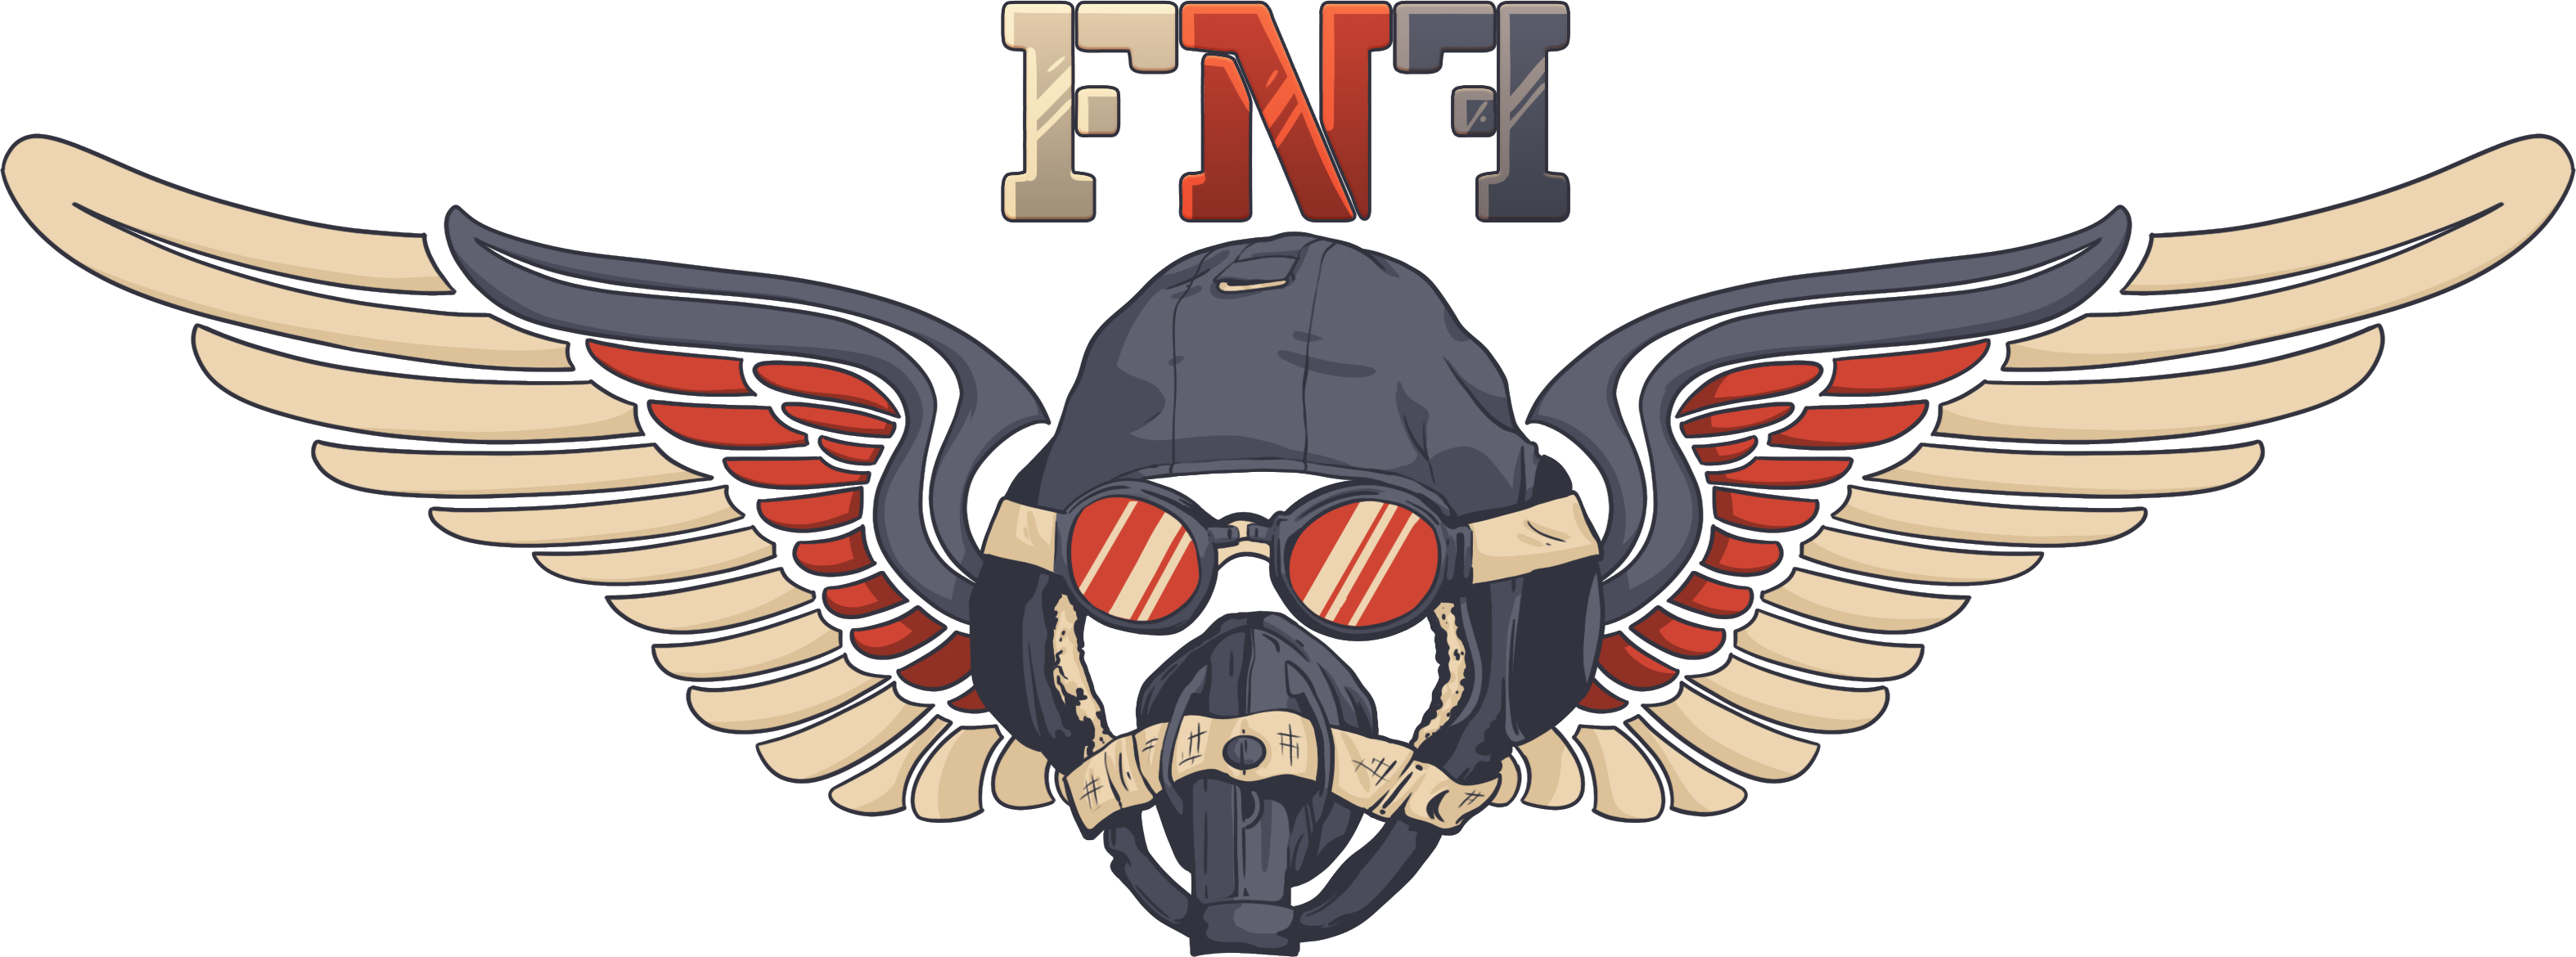 The Friday Night Flights Logo